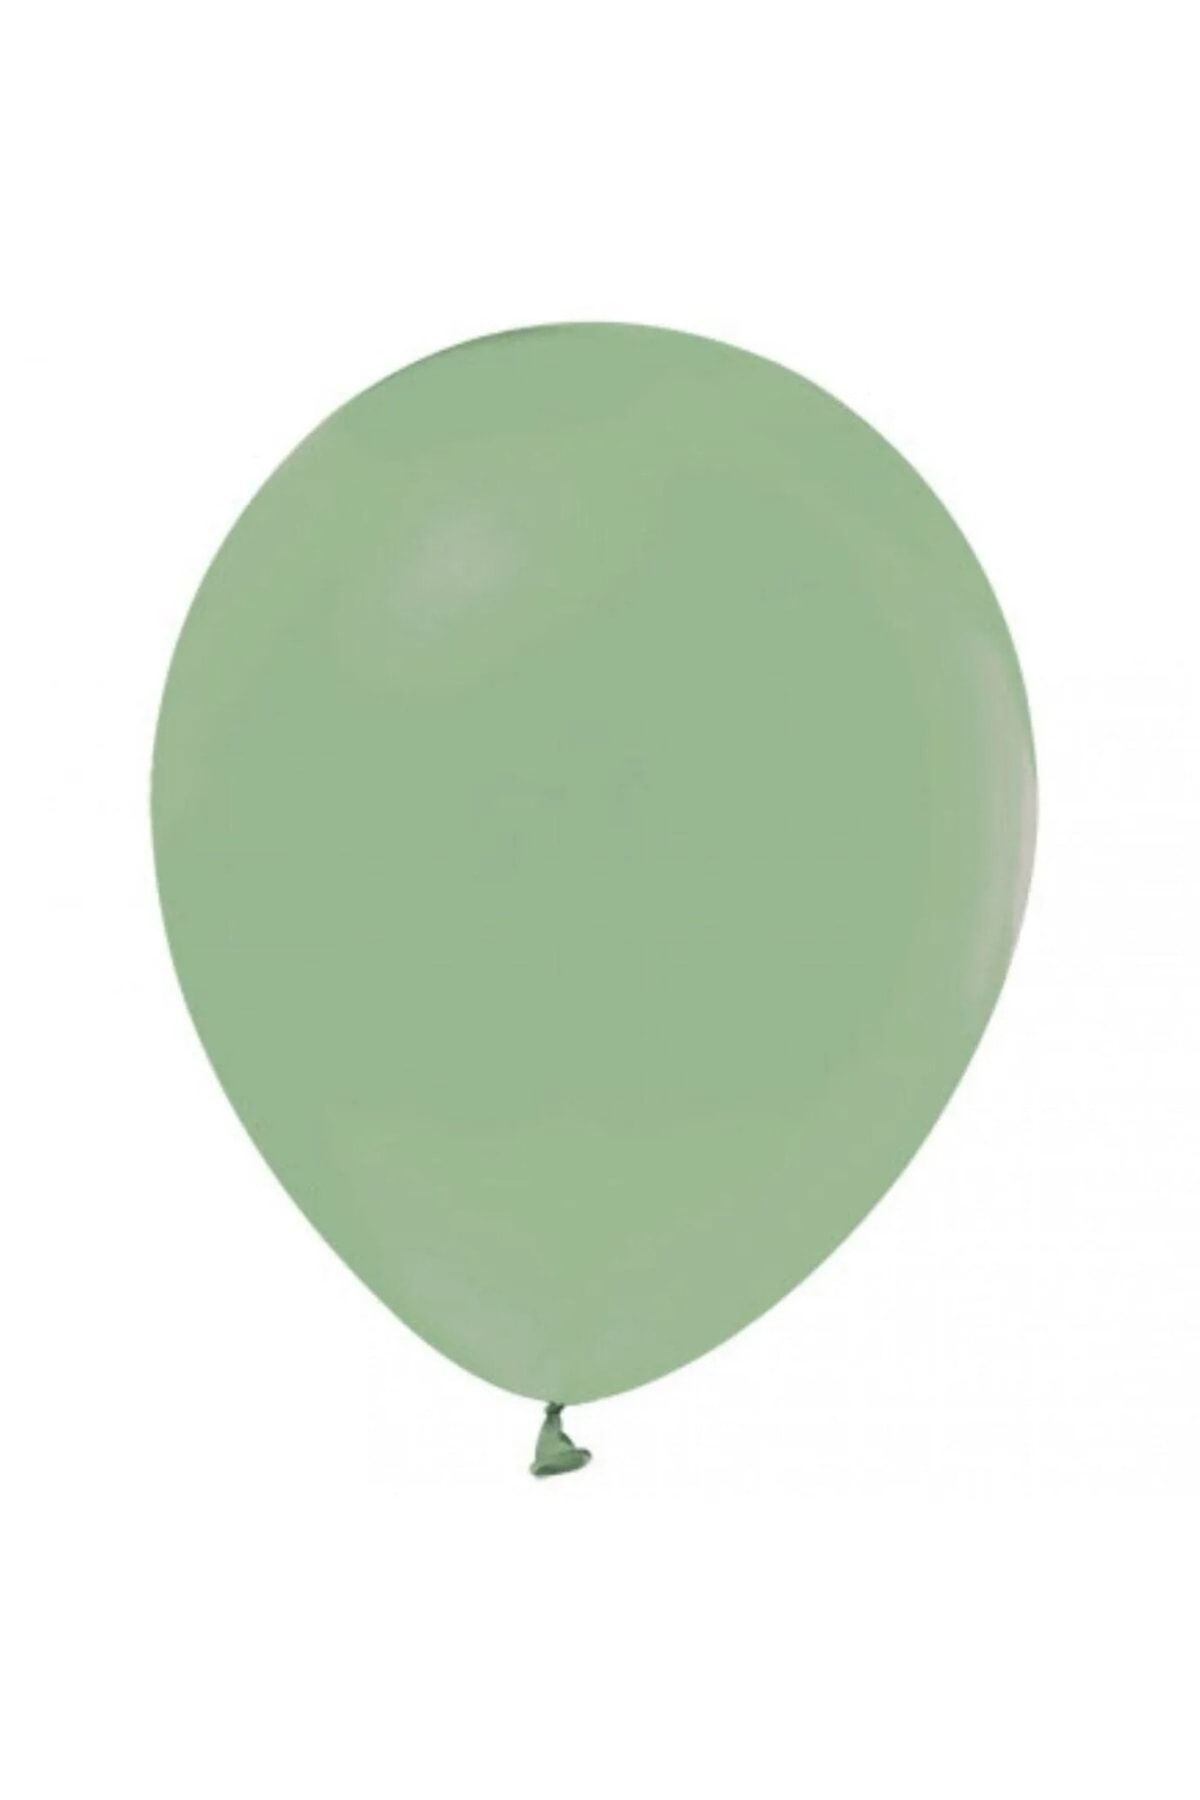 asöy Pastel Küf Yeşili Balon 10 Adet Standart Boy 30 Cm Pastel Renkli Parti Balonu Doğum Günü